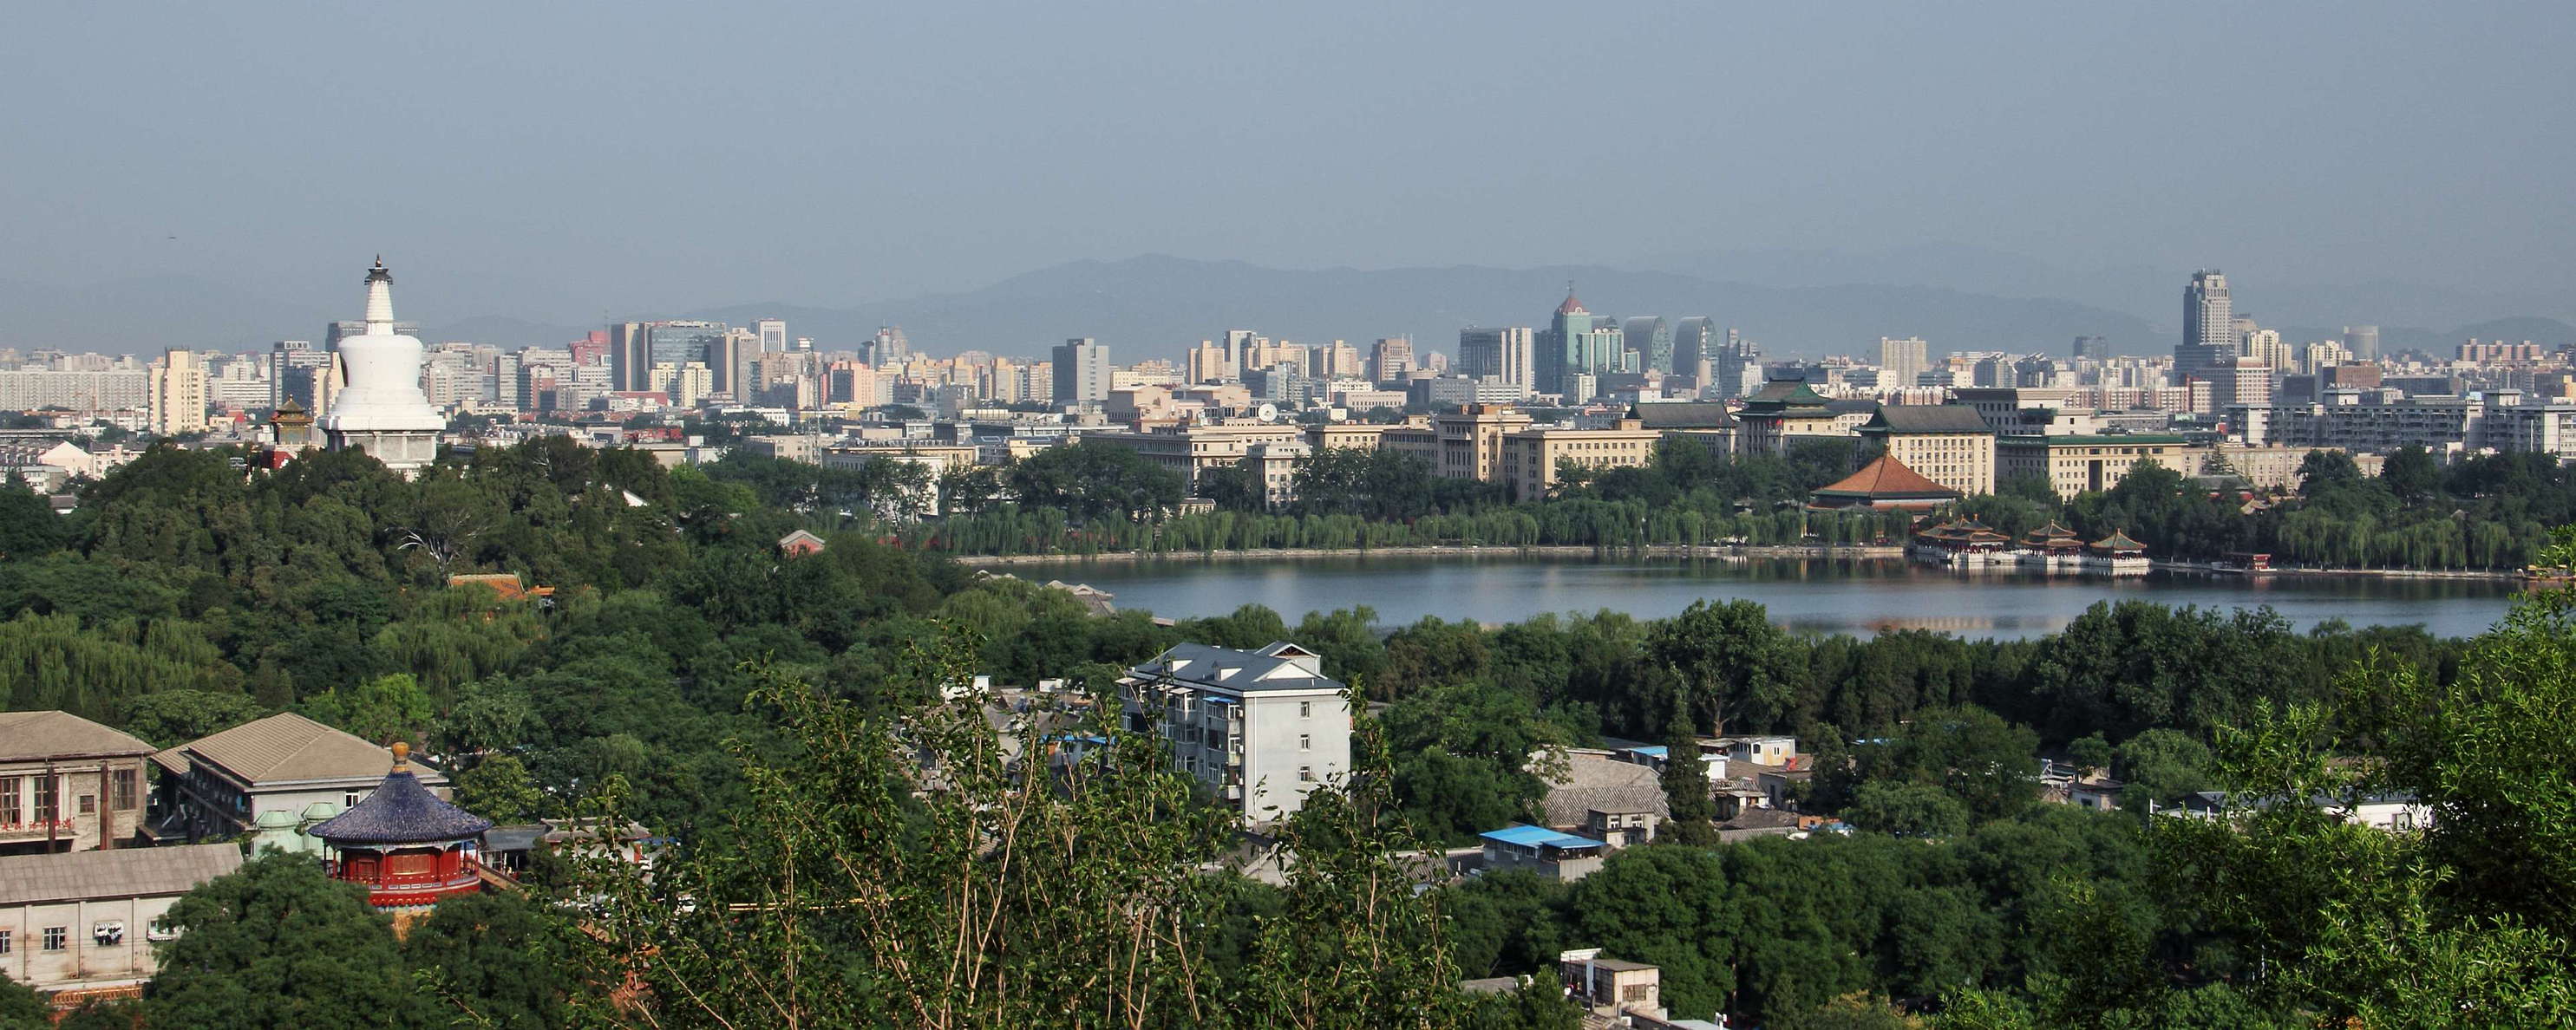 Beijing  |  City panorama with Beihai Park